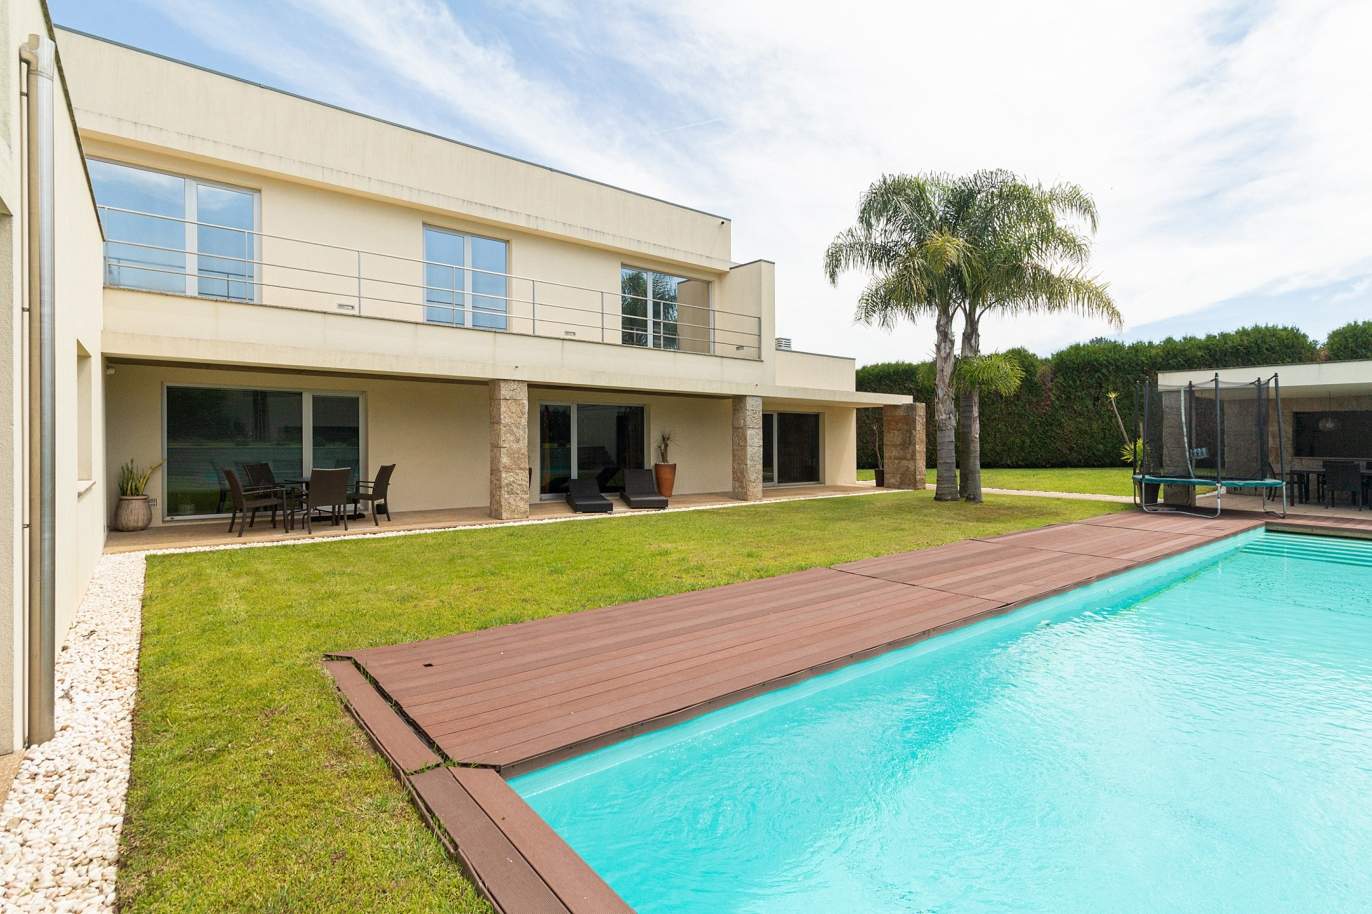 Villa mit Pool und Garten, zu verkaufen, in Avintes, V. N. Gaia, Portugal_174056